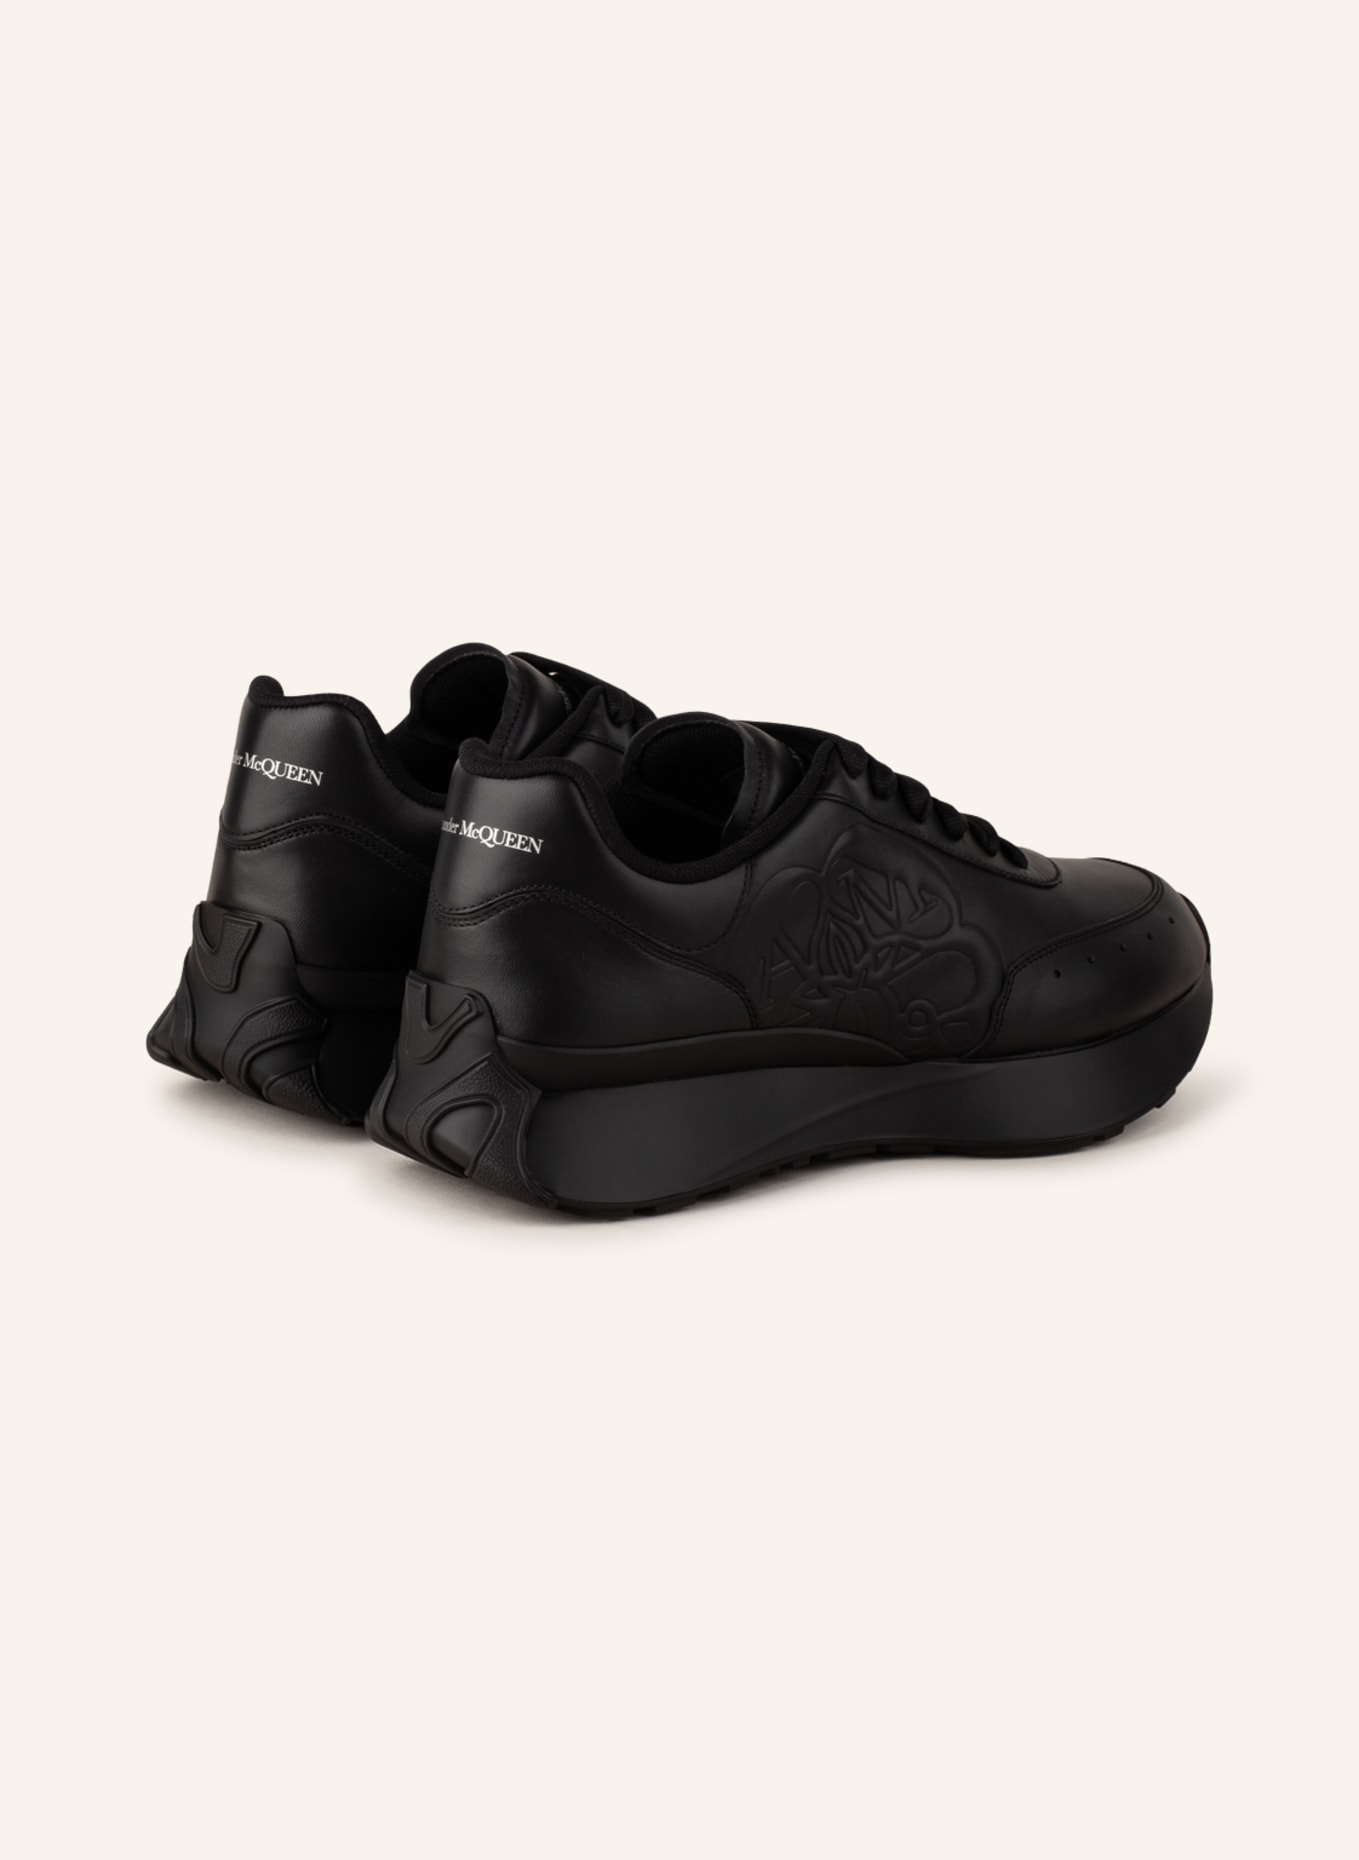 Alexander McQUEEN Sneakers, Color: BLACK (Image 2)